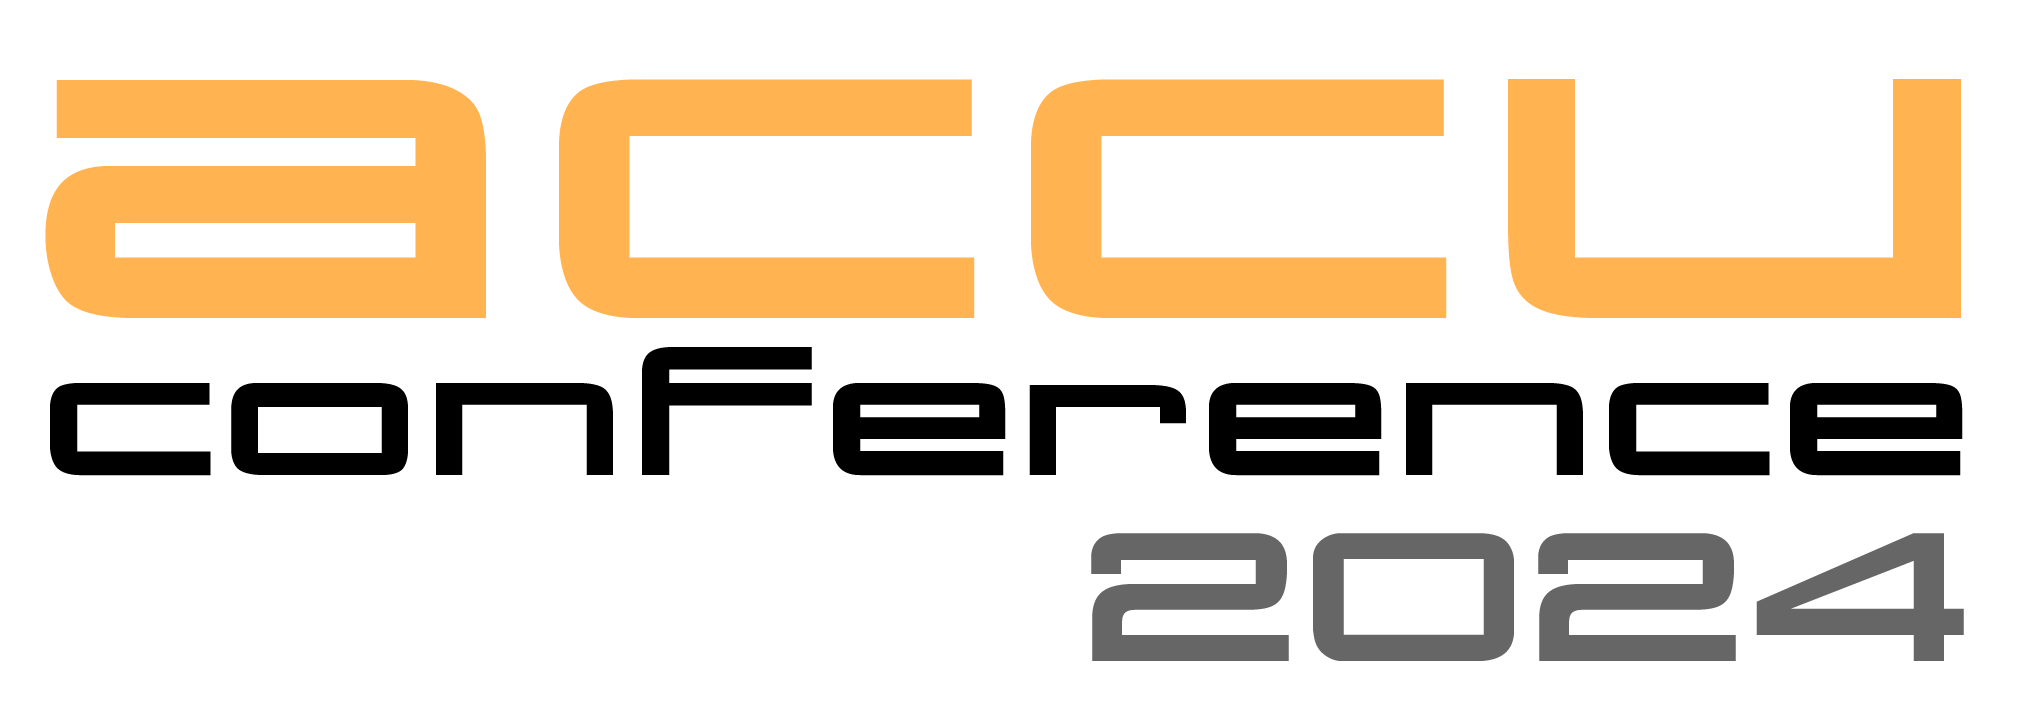 logo2024.png